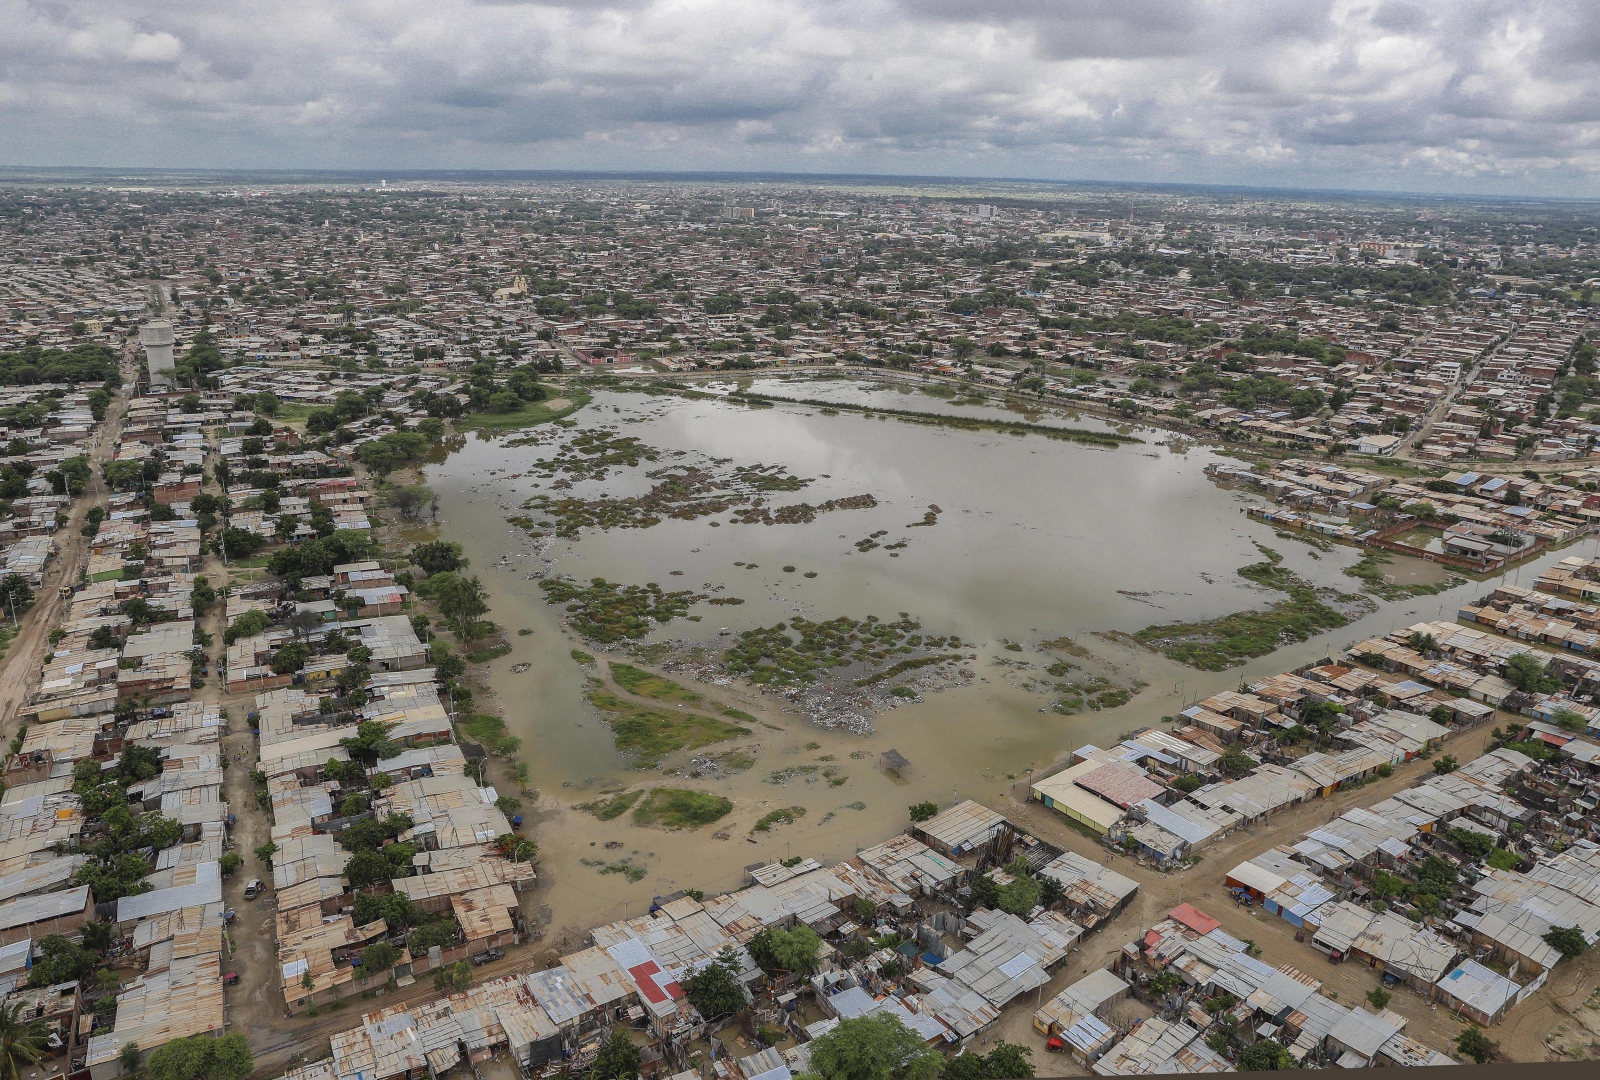 Zdjęcie powodzi, które nawiedziły Sullanę w Peru.